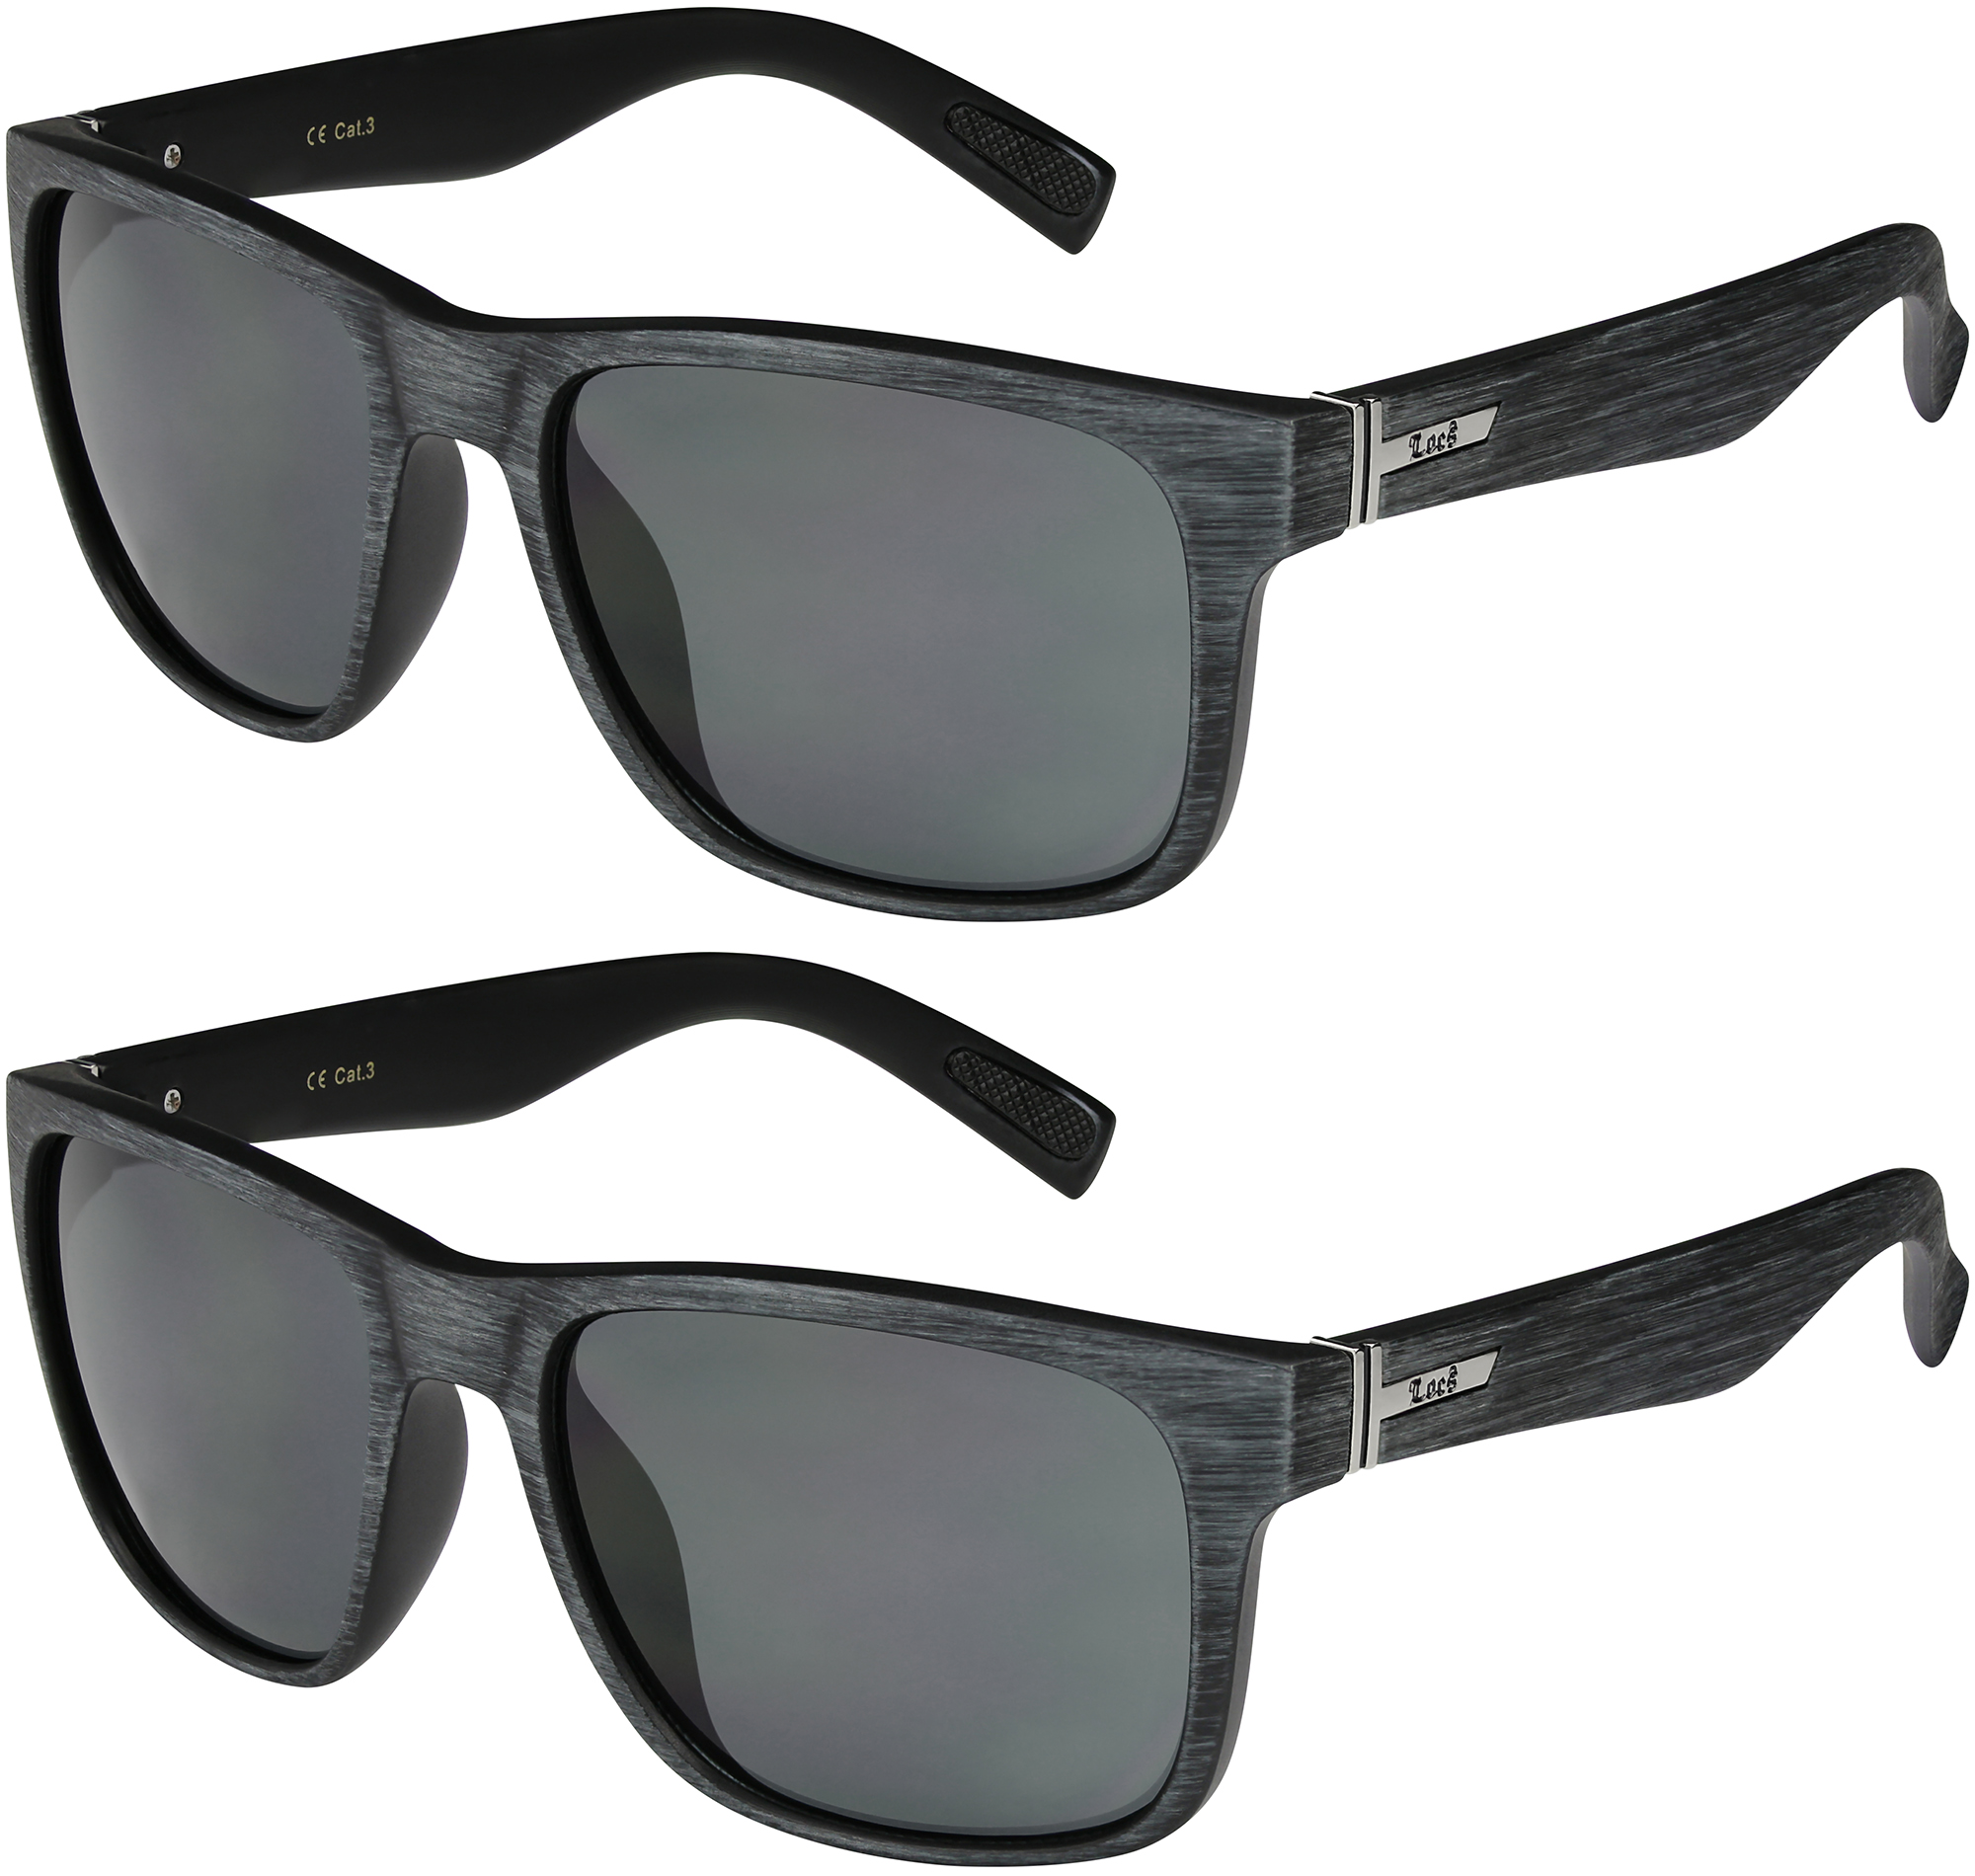 2er Pack Locs 9035 Choppers Motorrad Brille Sonnenbrille Herren Damen schwarz 